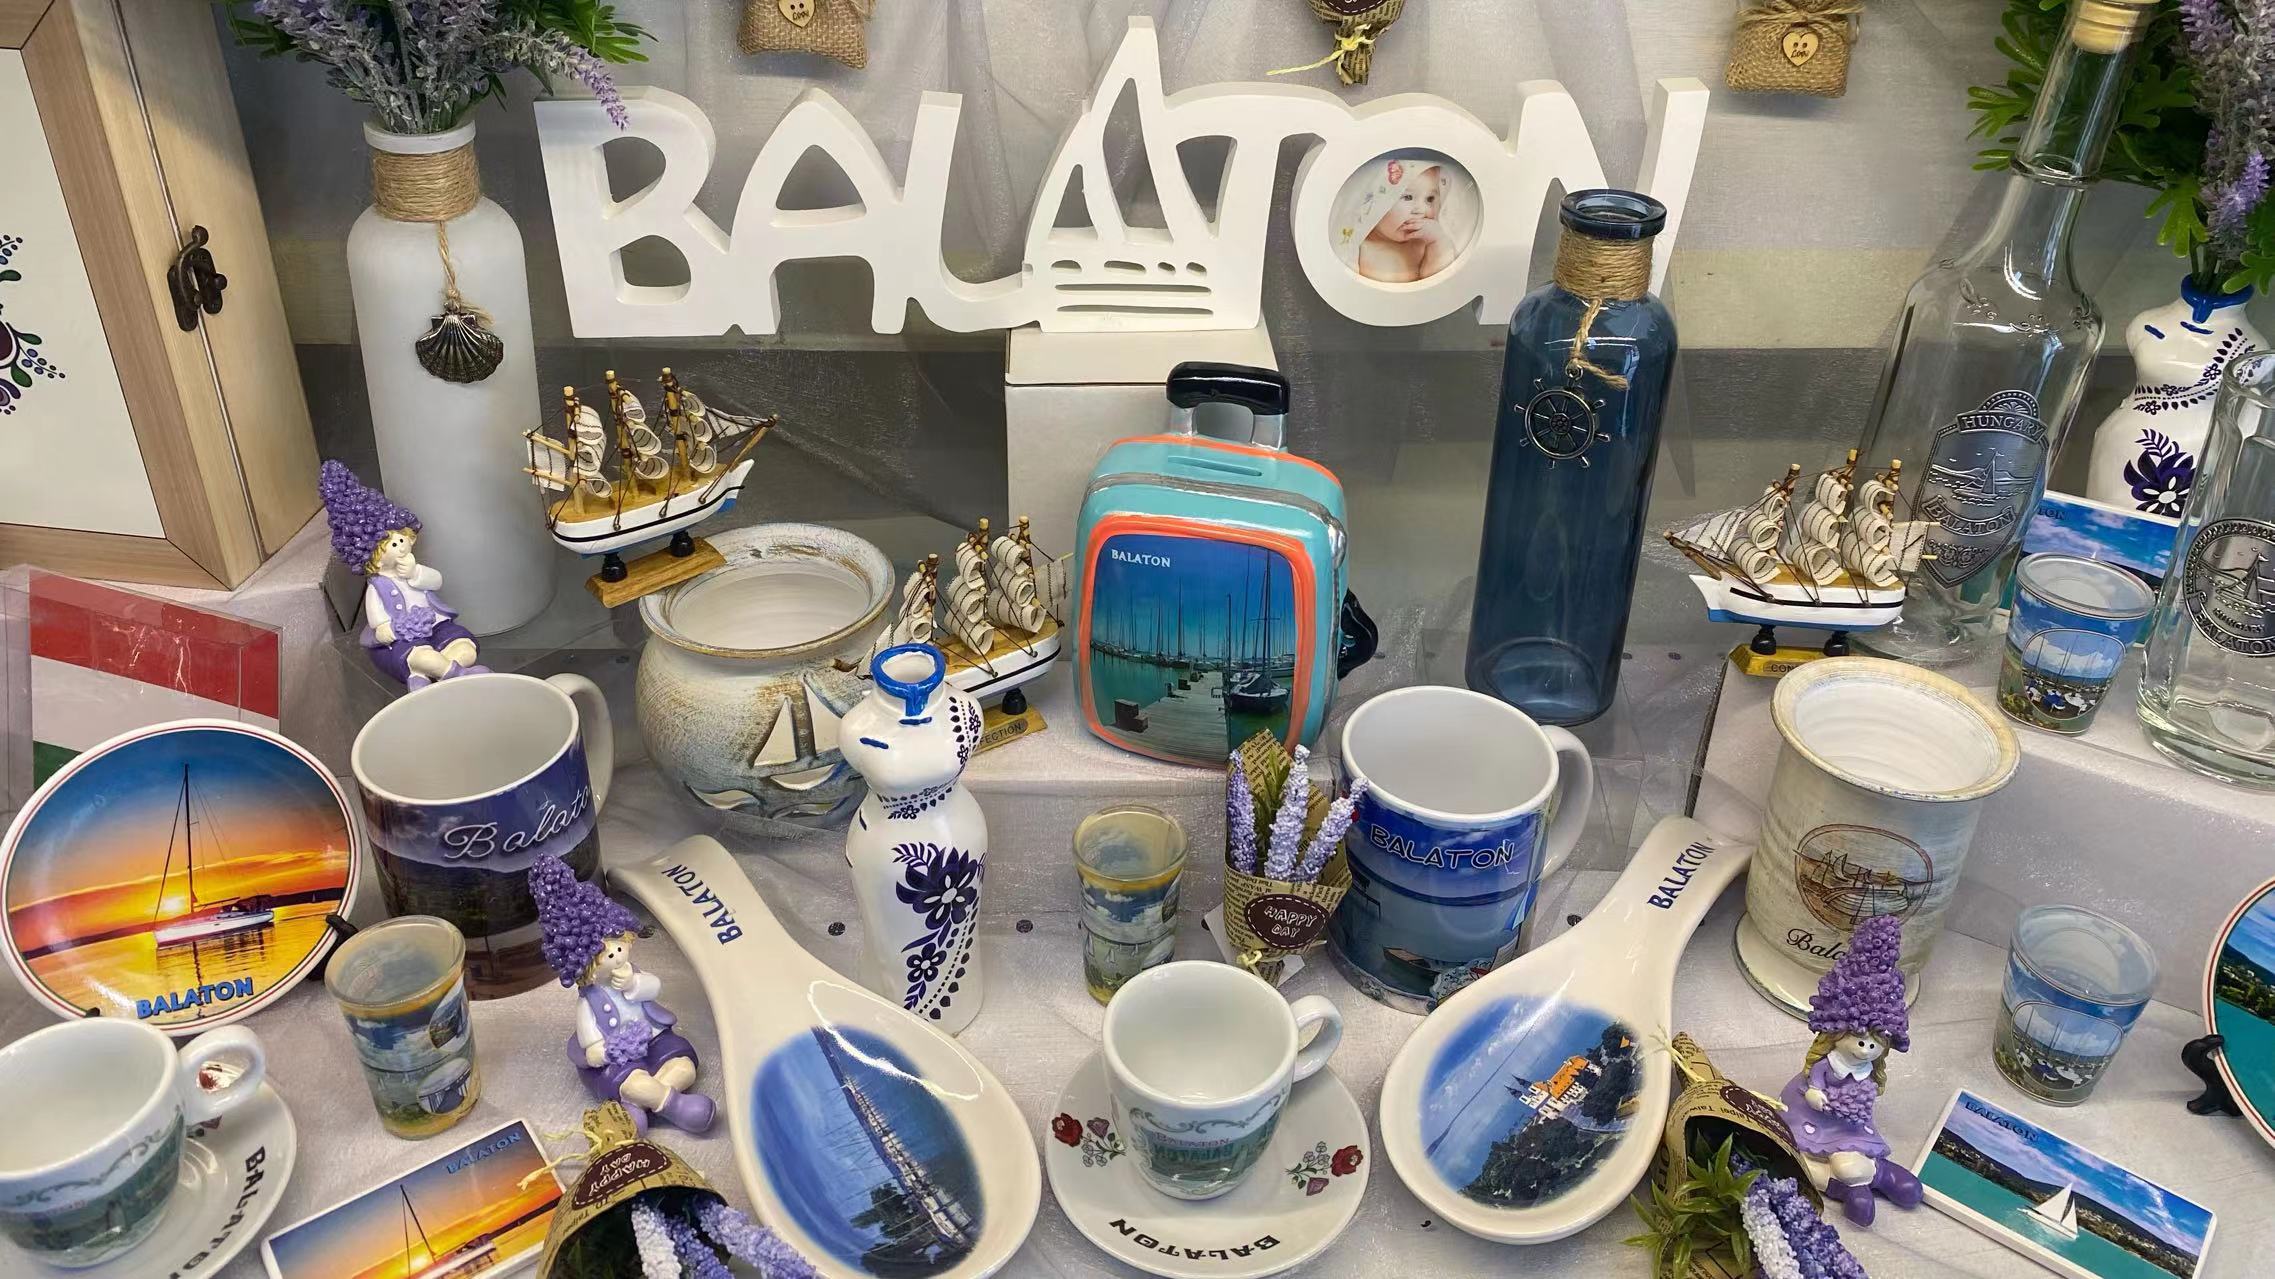 Balaton